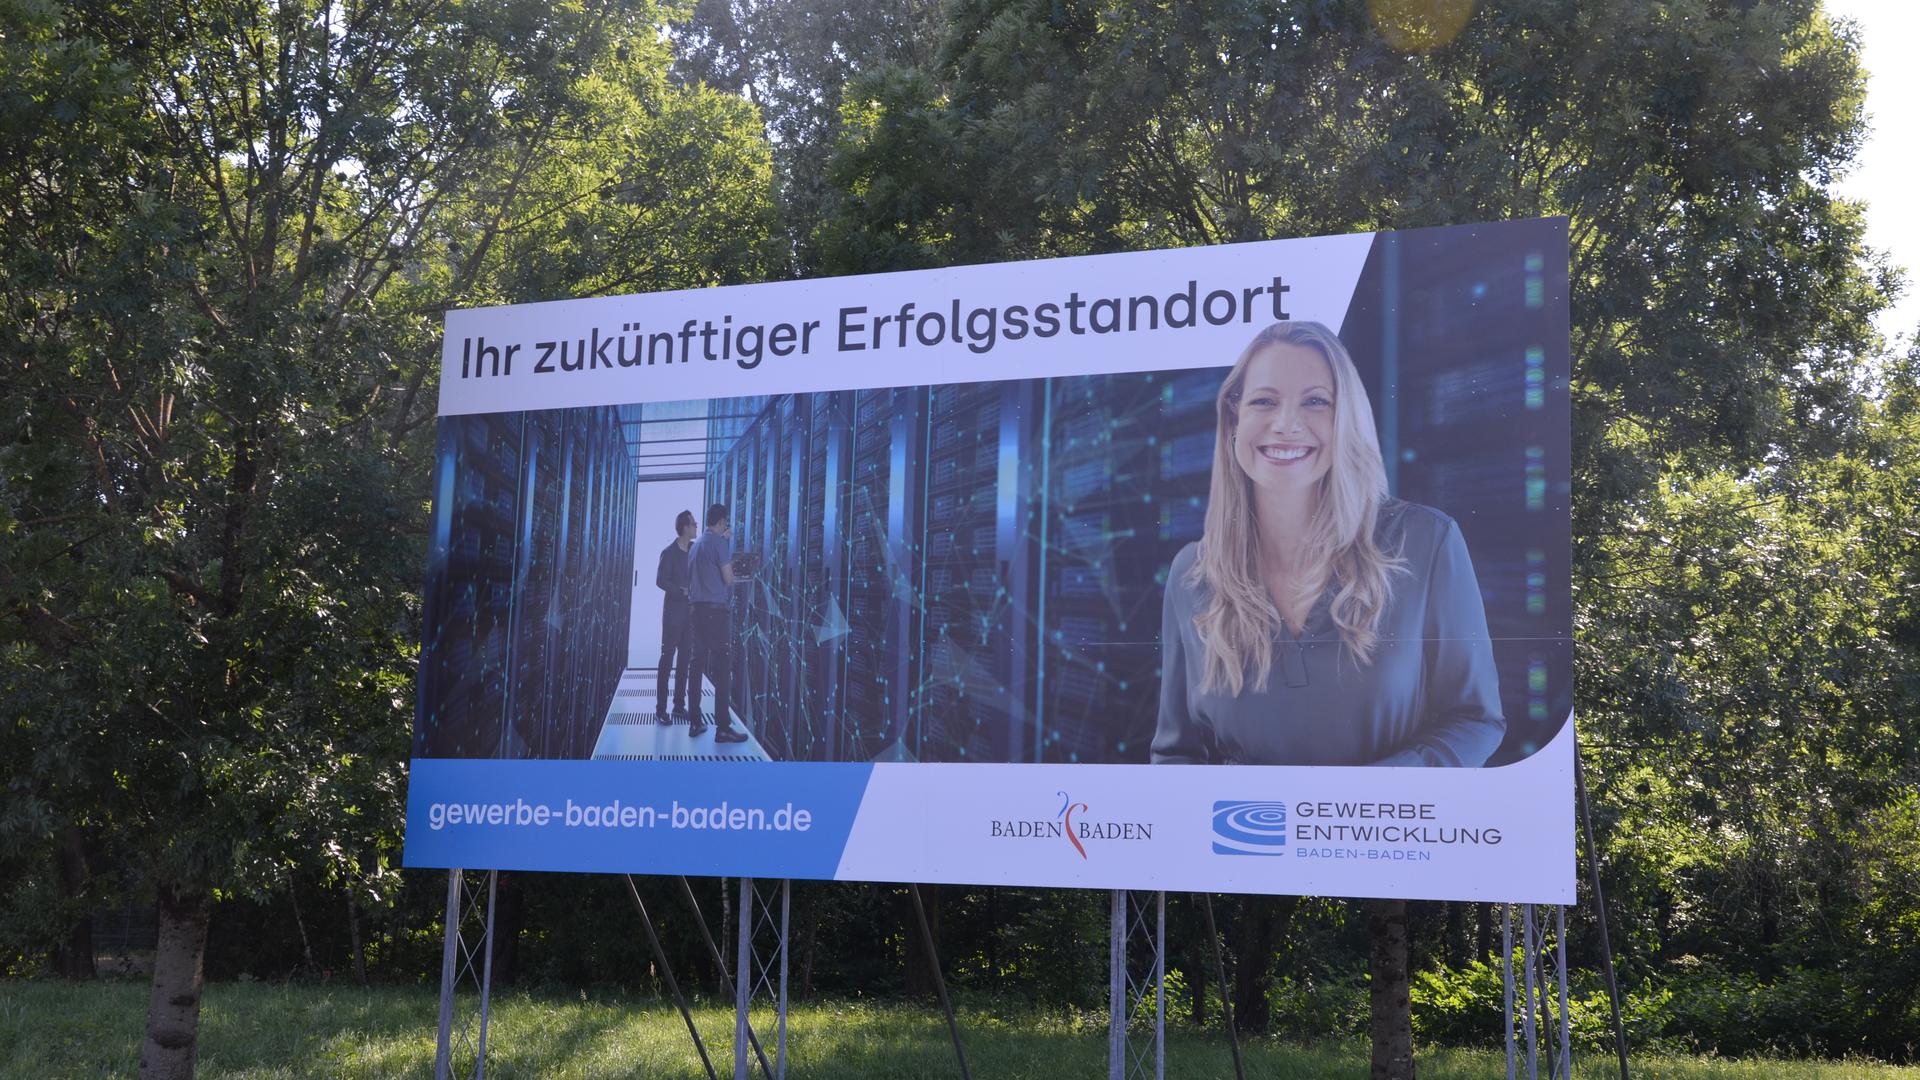 Frauen im Vordergrund: Auf den neuen Werbeschildern der Gewerbeentwicklungsgesellschaft in Baden-Baden werden ausschließlich Frauen in wichtigen Positionen abgebildet. Männer huschen allenfalls als Subalterne durch den Bildhintergund.